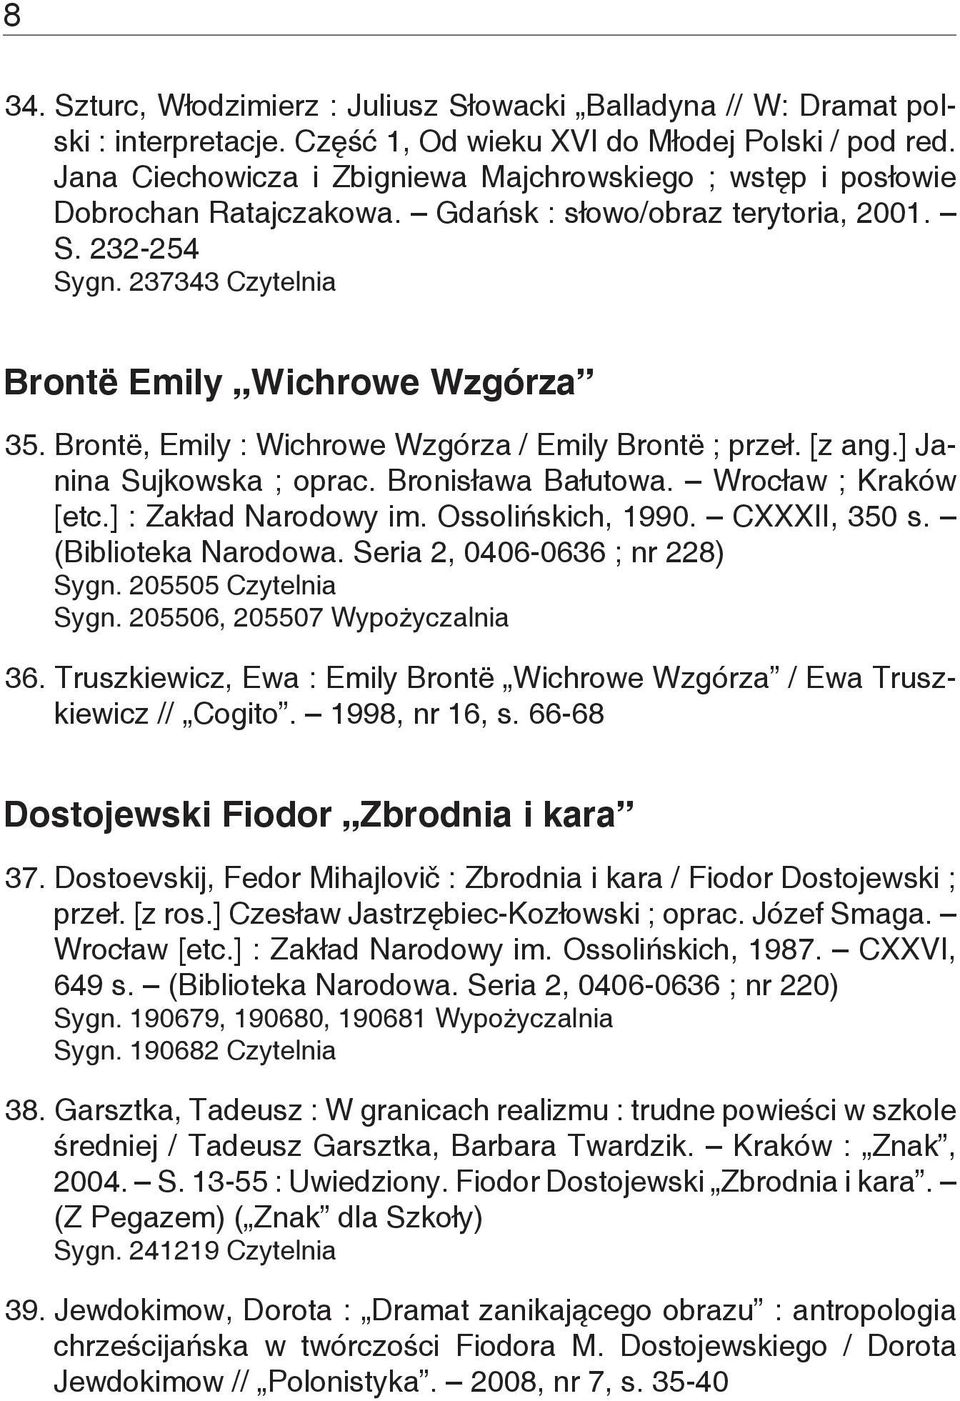 Brontë, Emily : Wichrowe Wzgórza / Emily Brontë ; przeł. [z ang.] Janina Sujkowska ; oprac. Bronisława Bałutowa. Wrocław ; Kraków [etc.] : Zakład Narodowy im. Ossolińskich, 1990. CXXXII, 350 s.